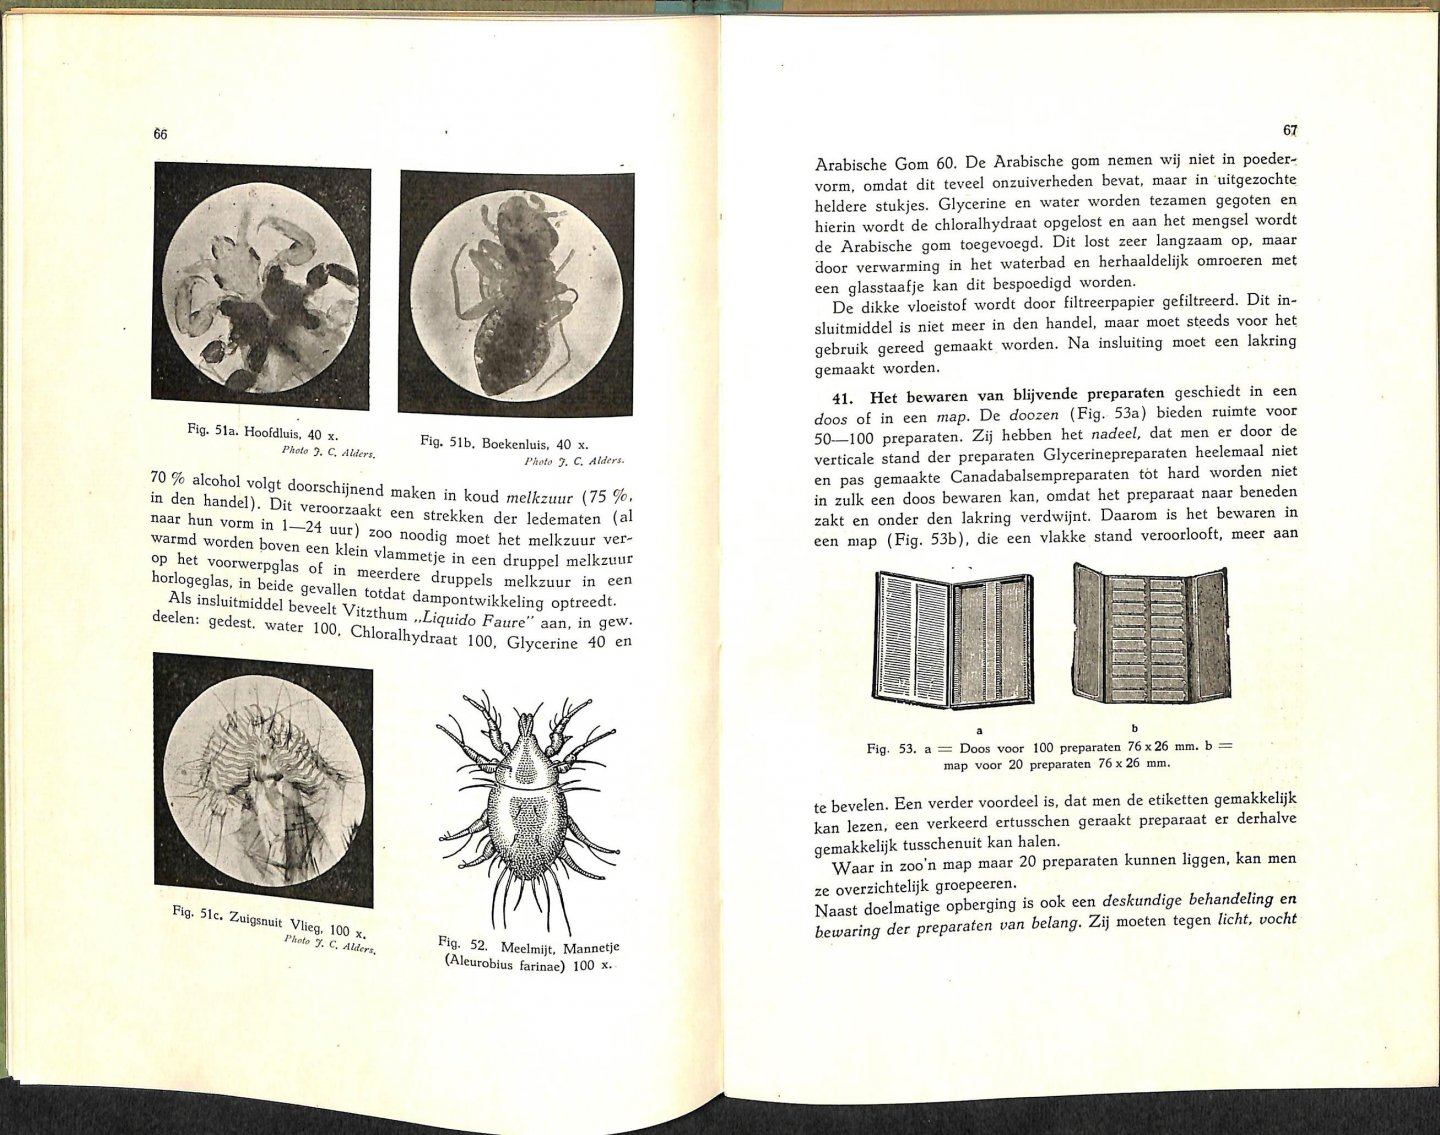 Stehli, George - Handboek voor mikroskopie. Handleiding voor het gebruik bij het onderwijs aan de middelbare scholen, landbouwscholen e.d. en tot het zelf vervaardigen van preparaten. Met 125 afbeeldingen